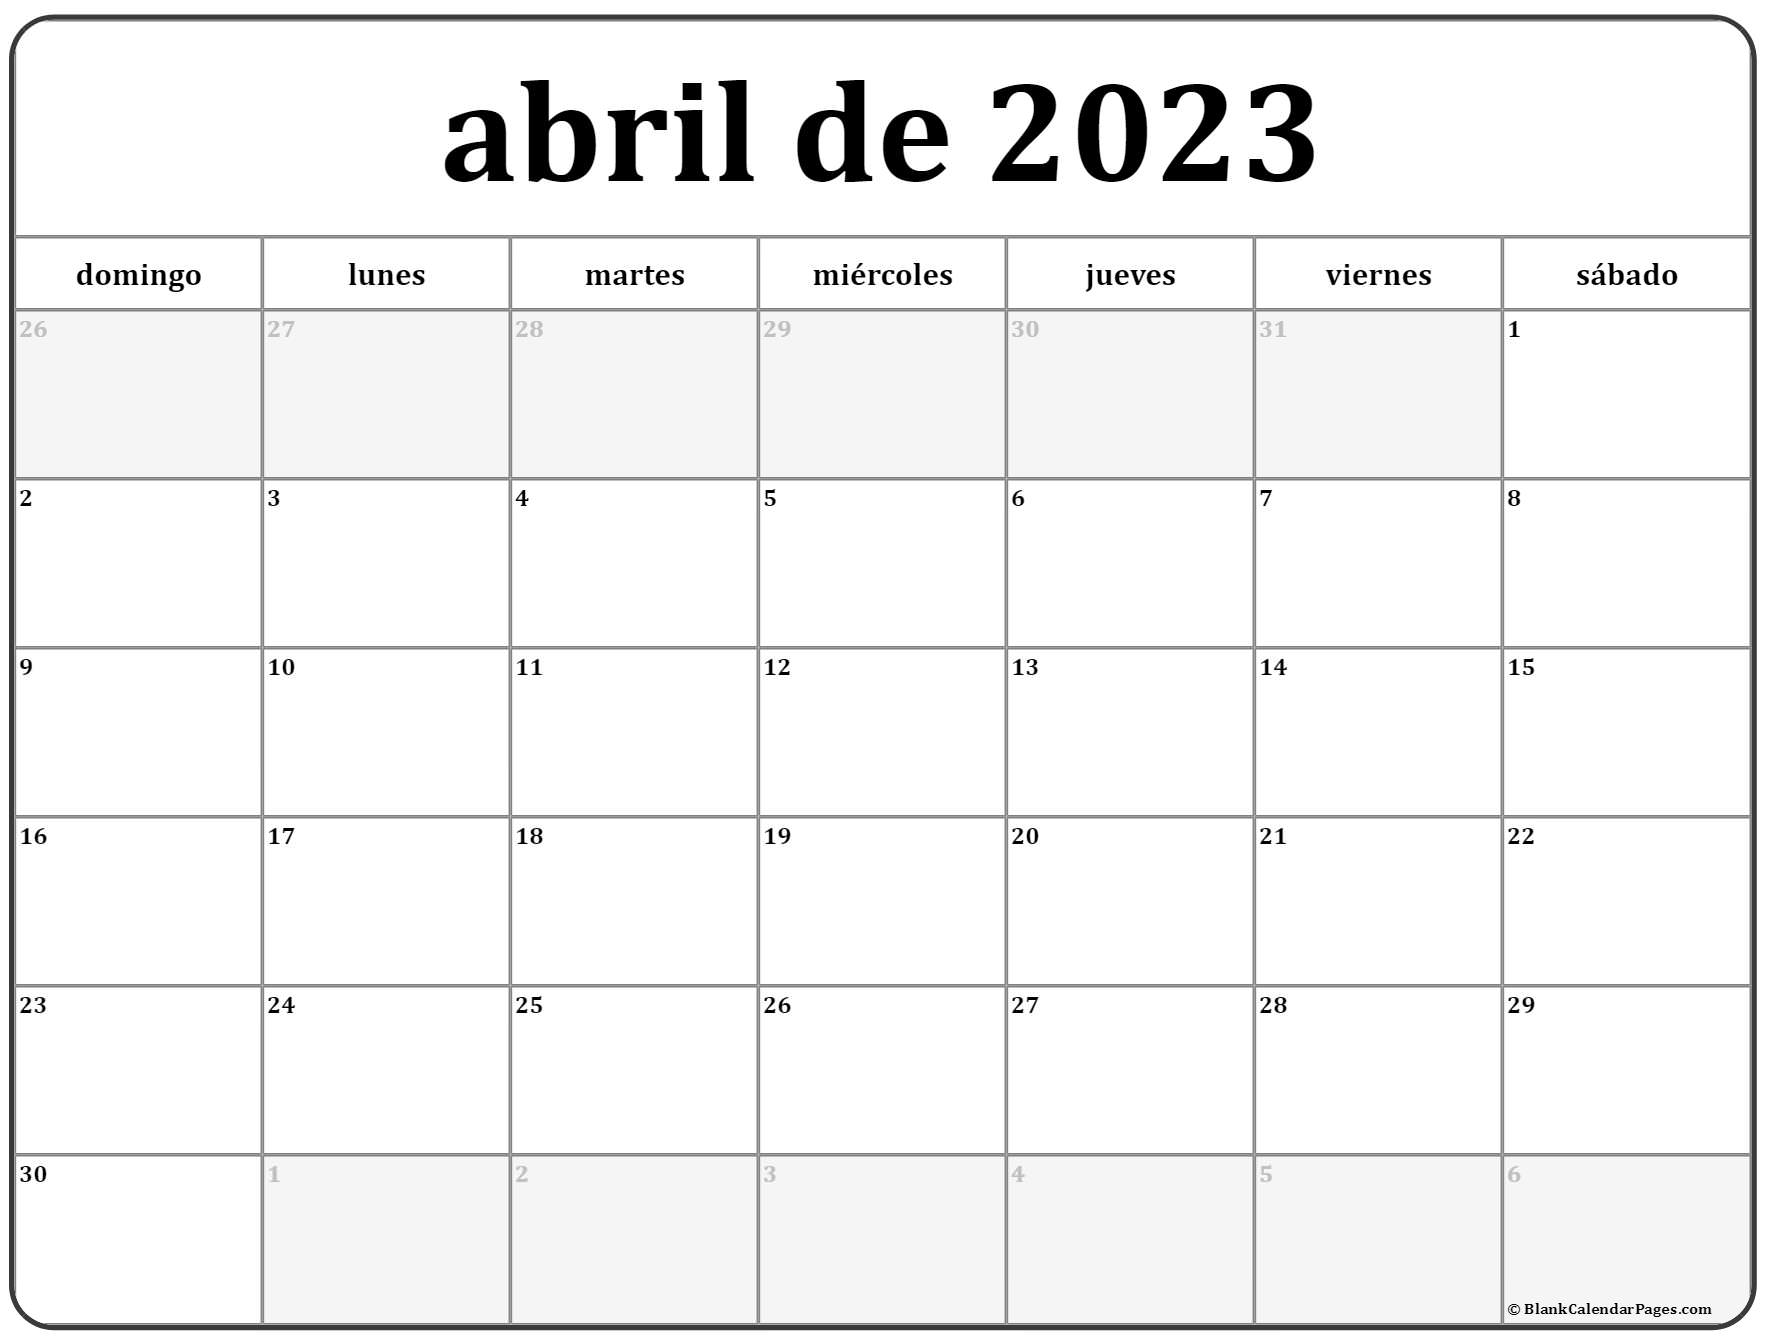 Almanaque De Abril 2023 abril de 2023 calendario gratis | Calendario abril